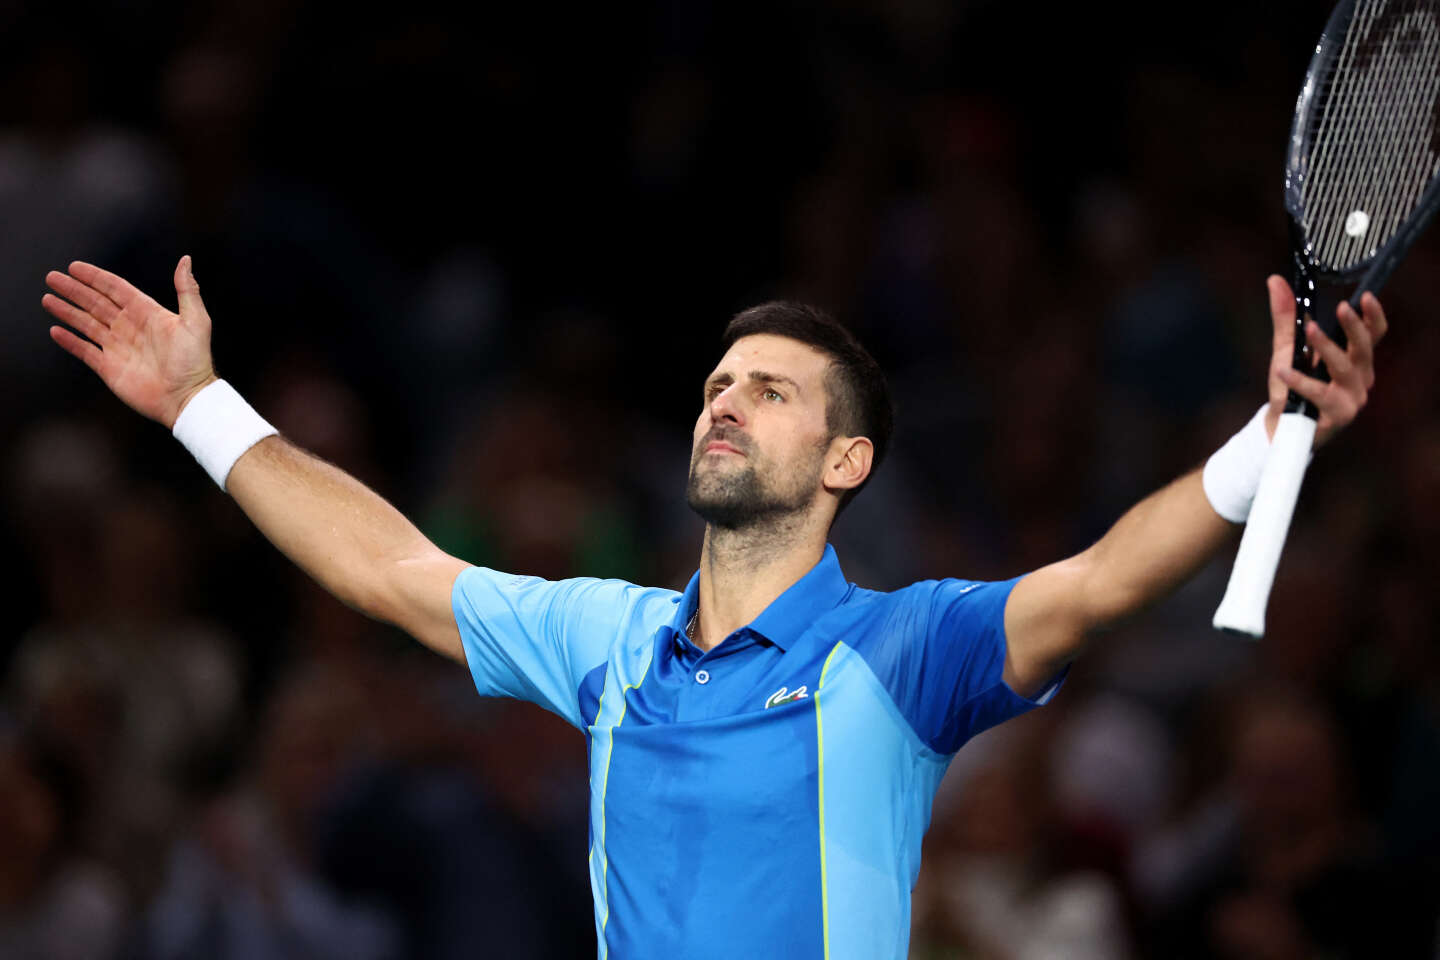 Zakwalifikowany do półfinału Paryż-Bercy Novak Djokovic walczy z młodzieżą